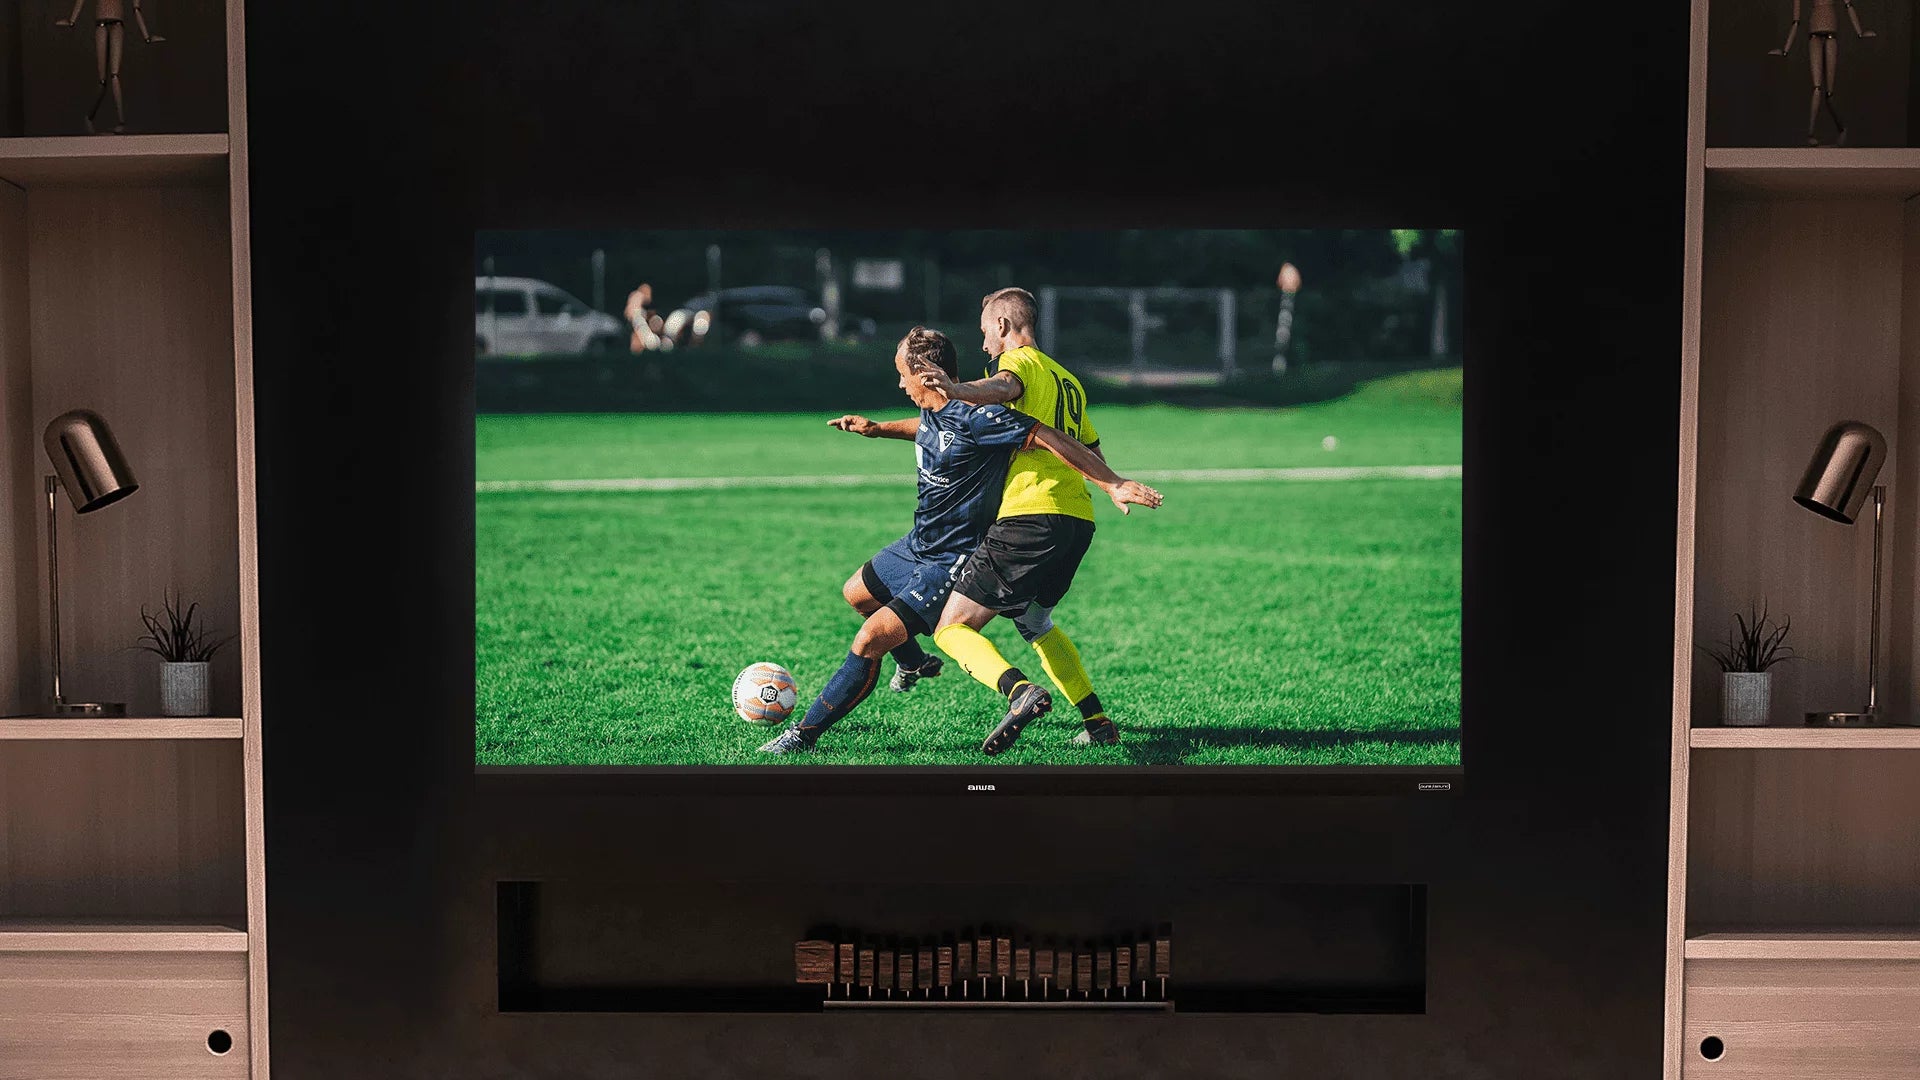 Aiwa MAGNIFIQ 139 cm 55 inches LED TV AS55UHDX1-GTV